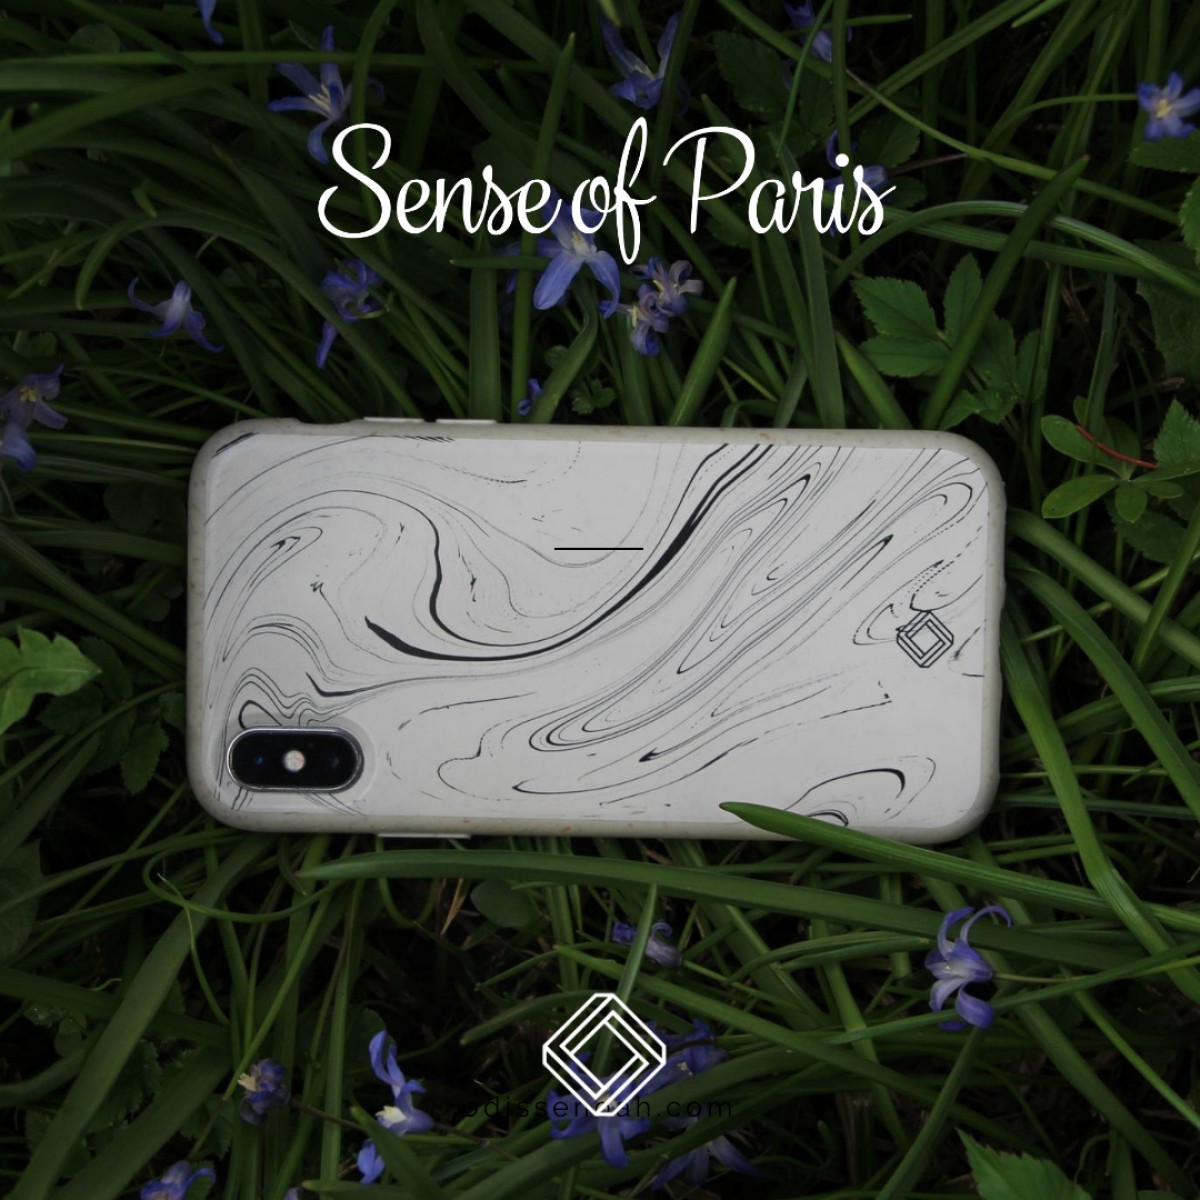 Sense of Paris